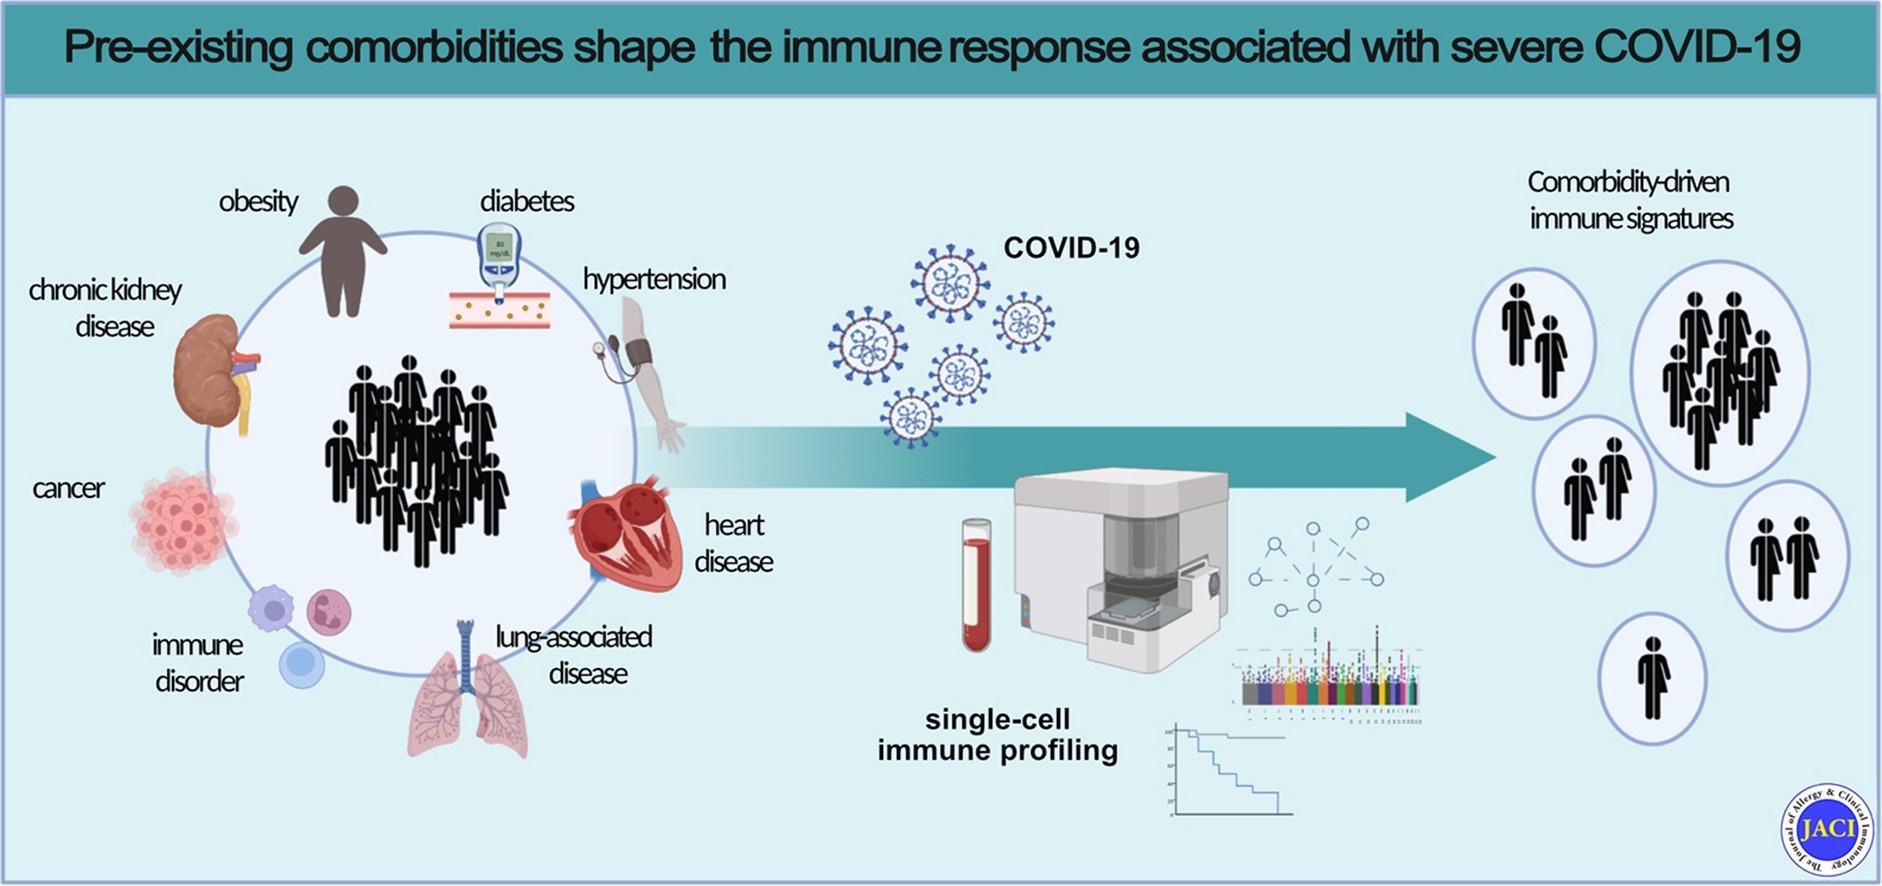 Les comorbidités préexistantes façonnent la réponse immunitaire associée au COVID-19 sévère